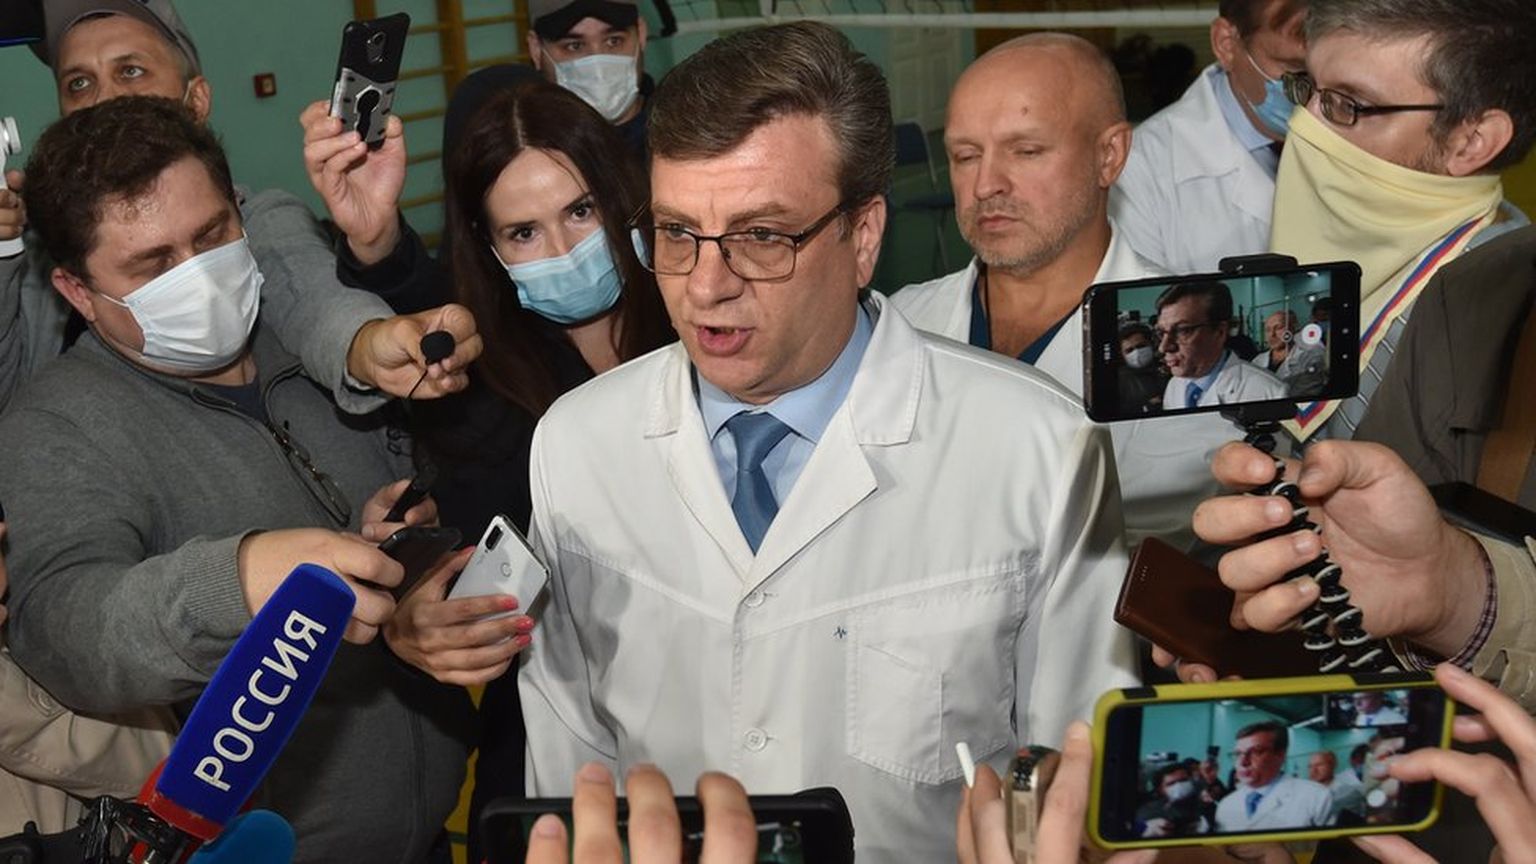 Мураховский был главврачом больницы скорой медицинской помощи №1 Омска, когда туда привезли отравленного Навального, и именно он рассказывал о его состоянии журналистам